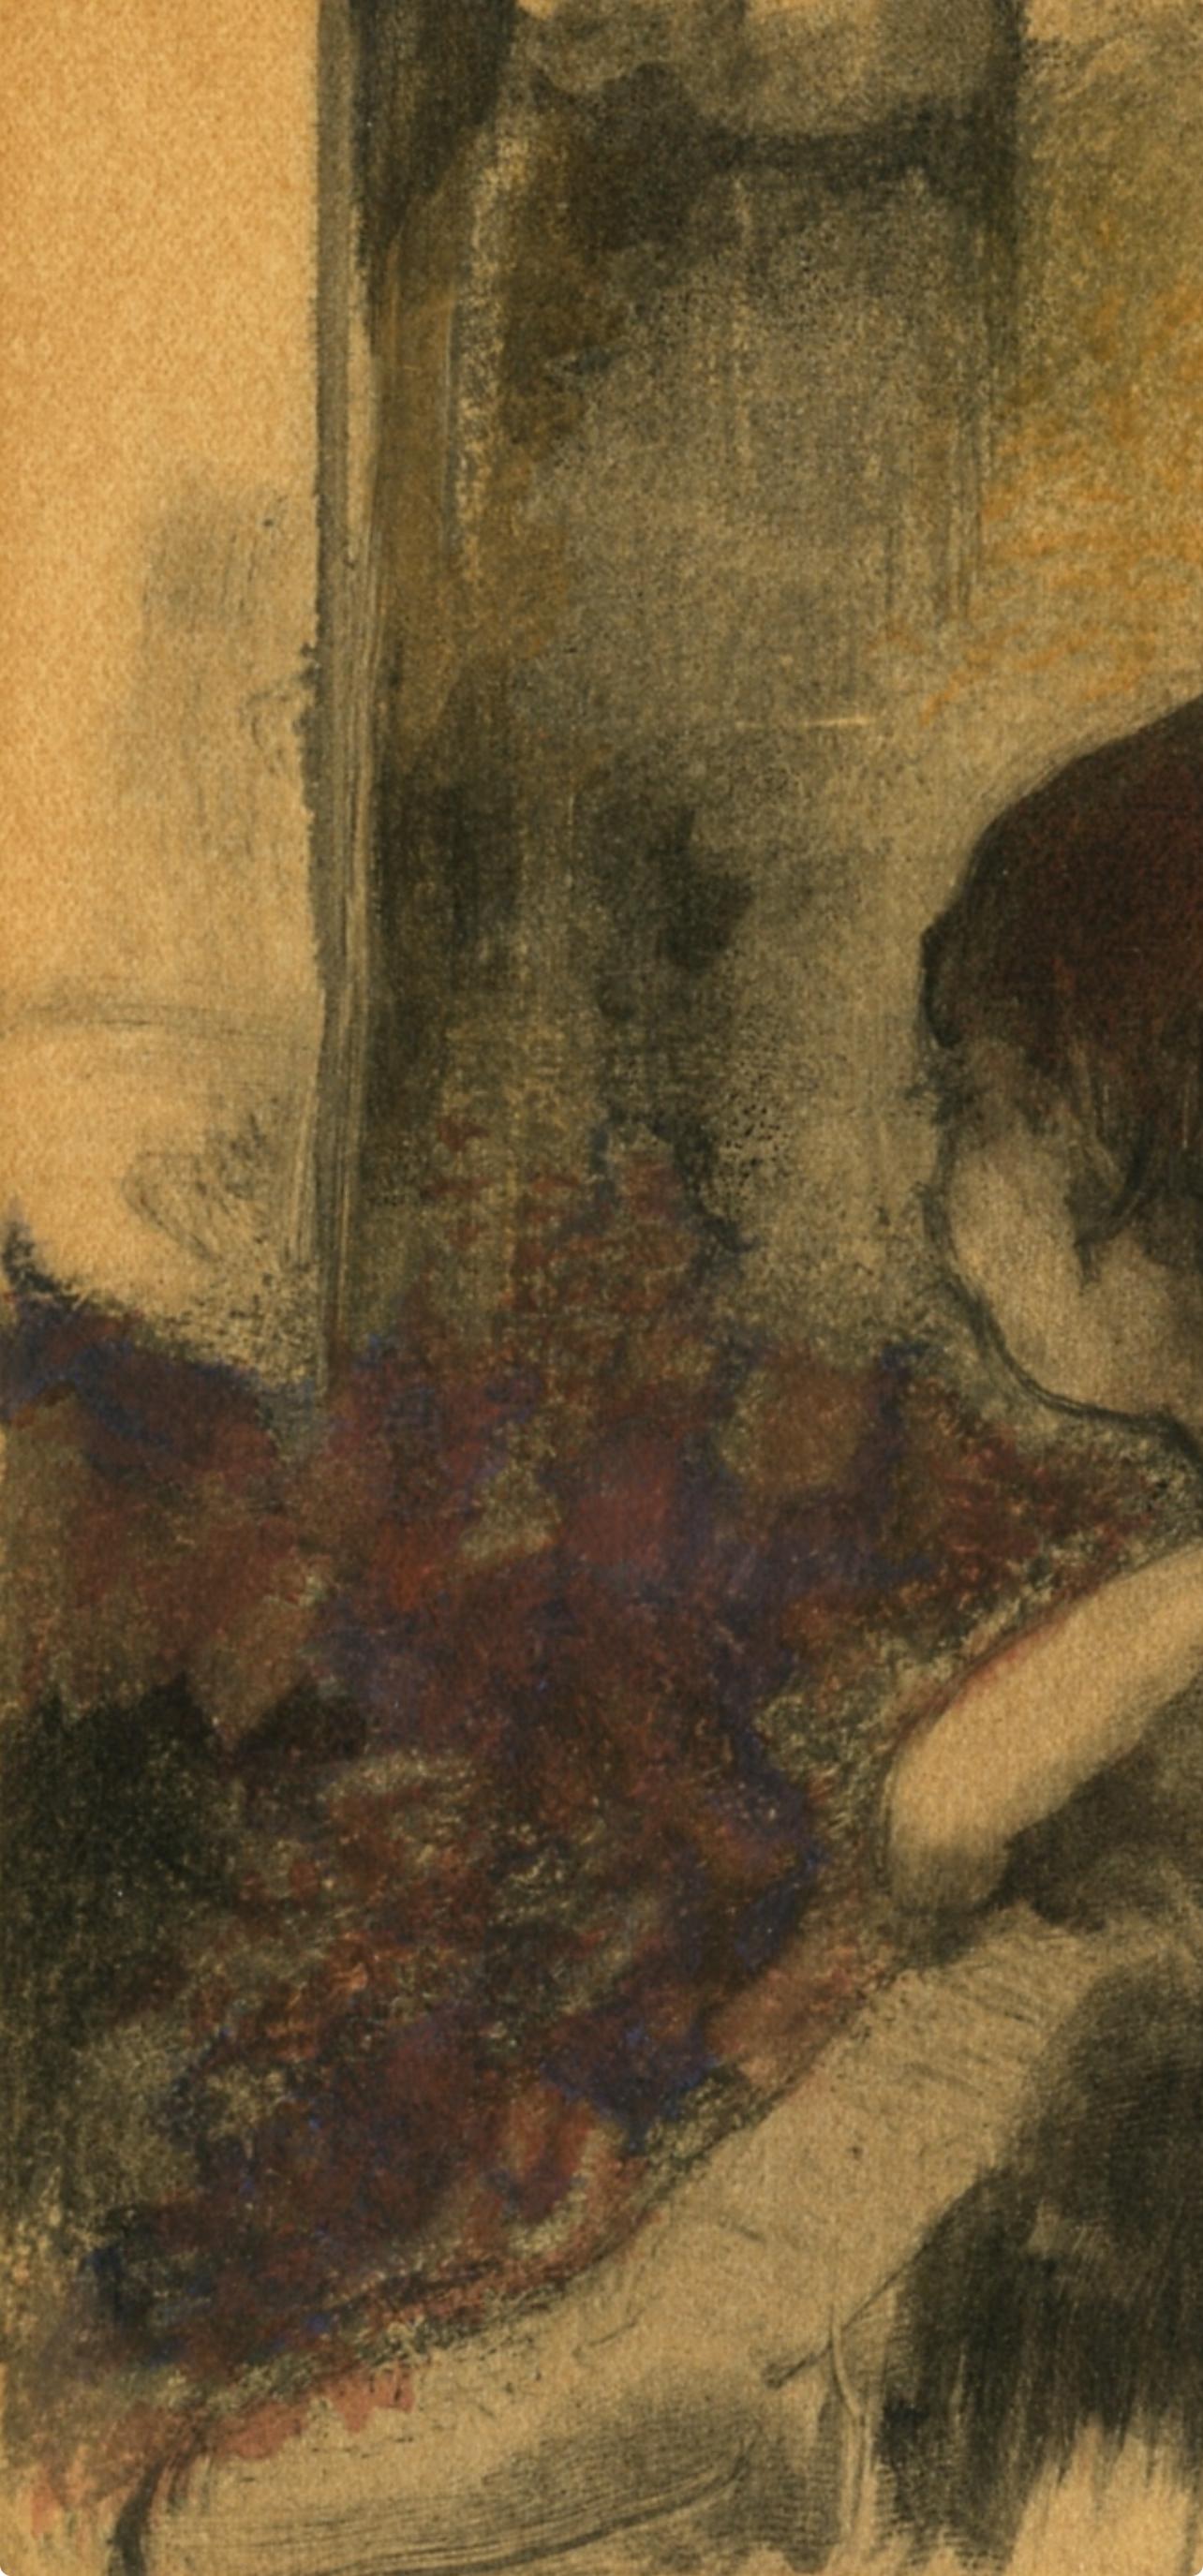 Degas, Trois Femmes de dos, Les Monotypes (after) - Print by Edgar Degas